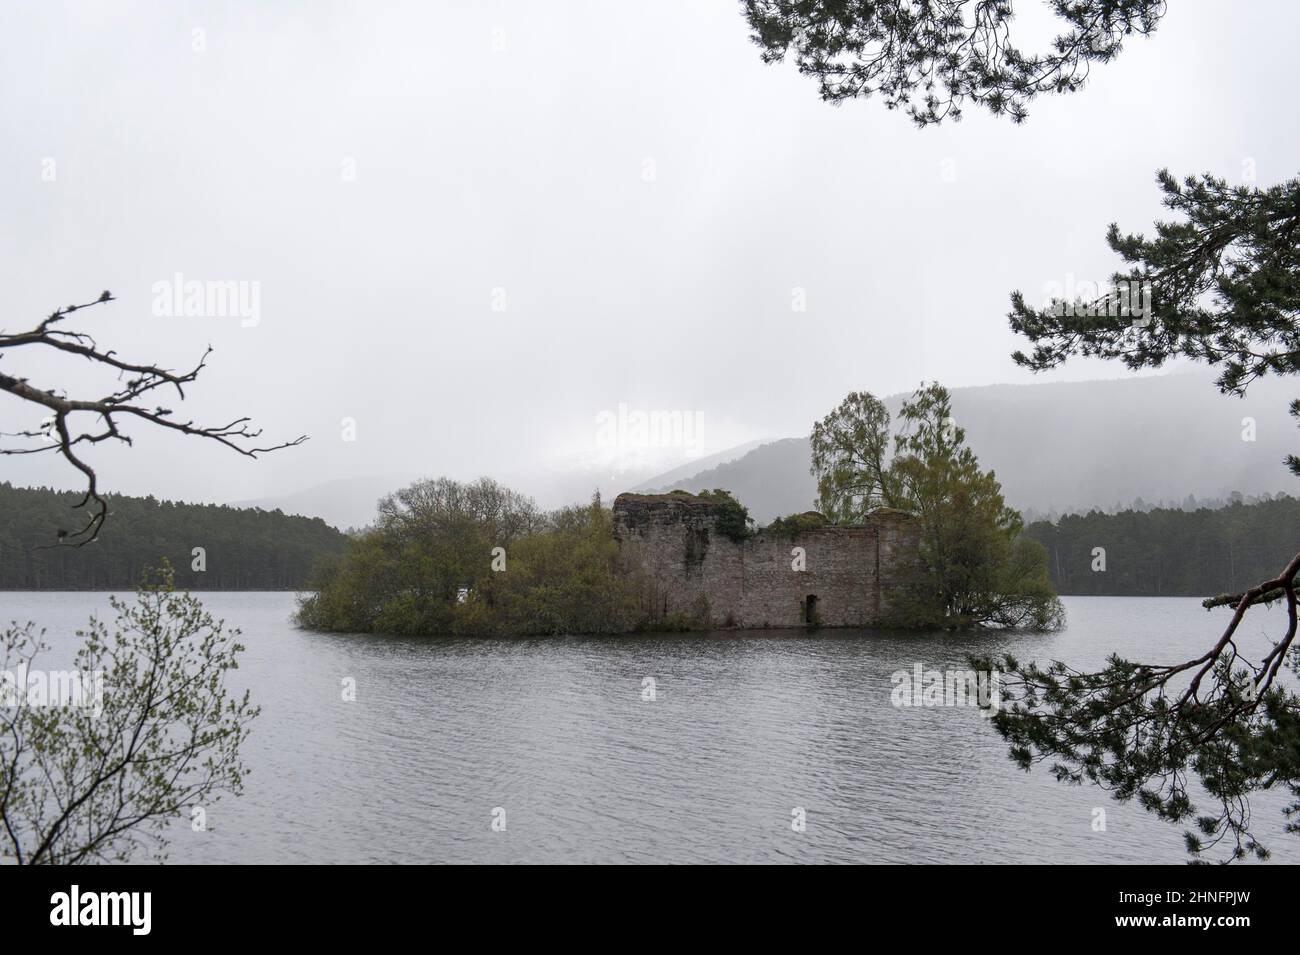 Ruine sur l'île, château du Loch an Eilean, lac an Eilein loch, Speytal, Aviemore, Highland, Écosse, Grande-Bretagne, Royaume-Uni Banque D'Images